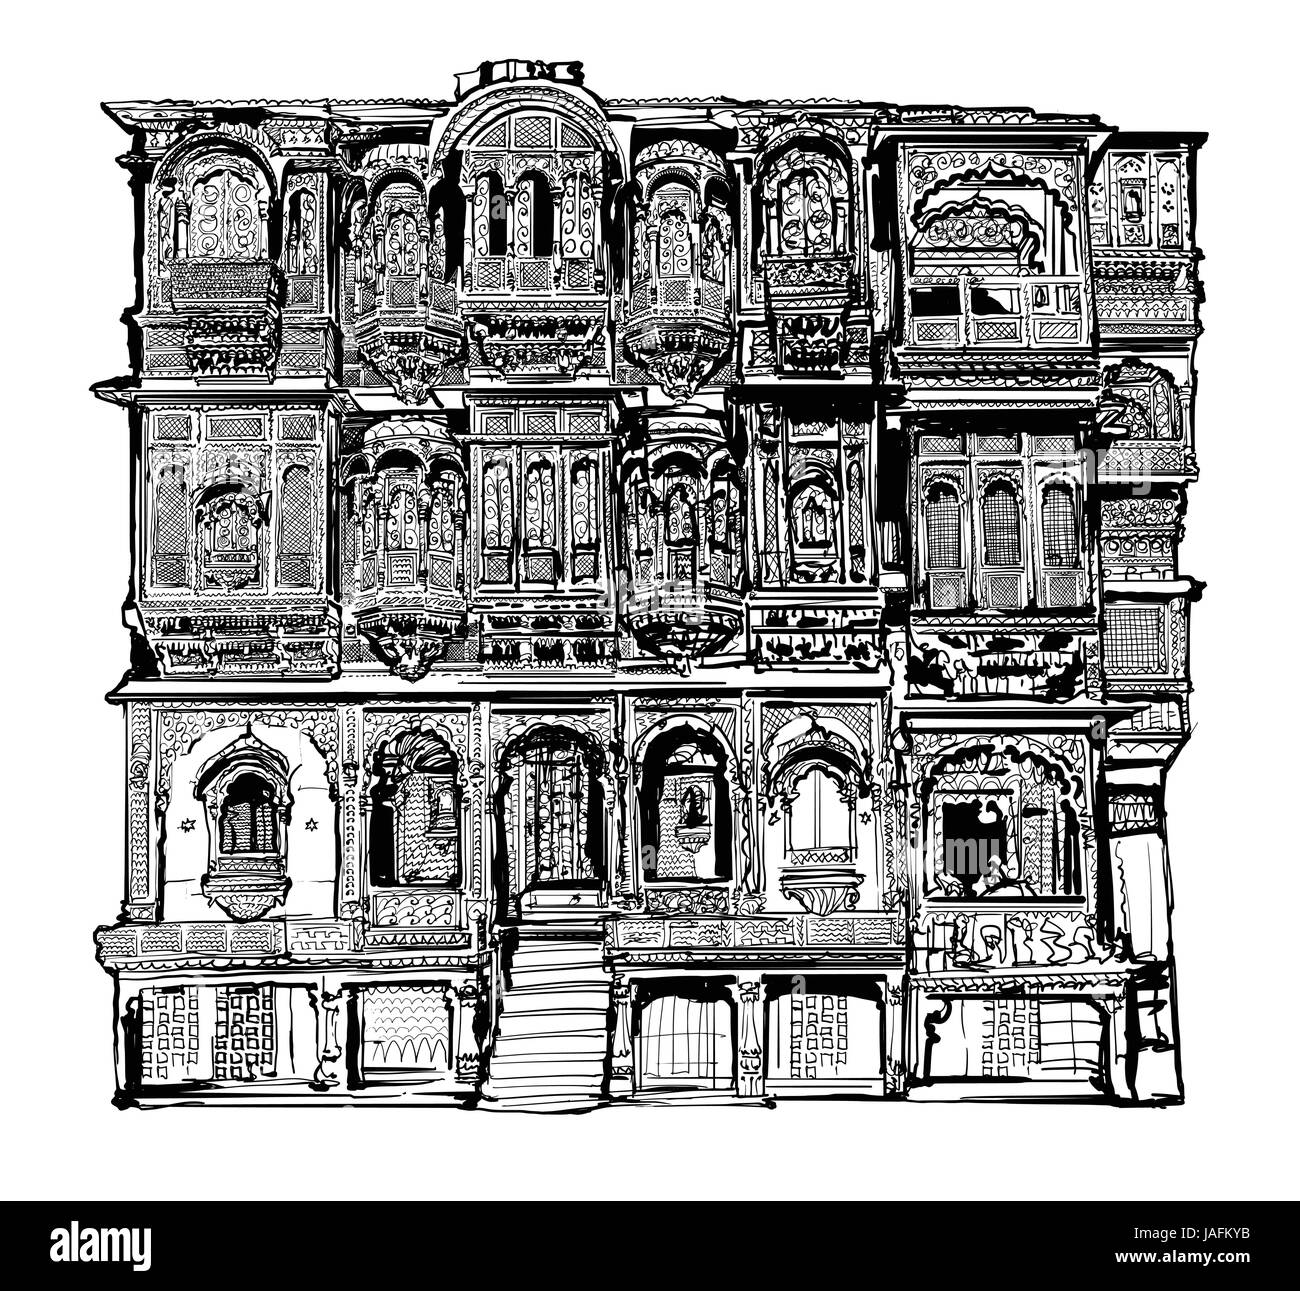 La facciata della vecchia casa con balconi in Jodhpur, India - illustrazione vettoriale Illustrazione Vettoriale